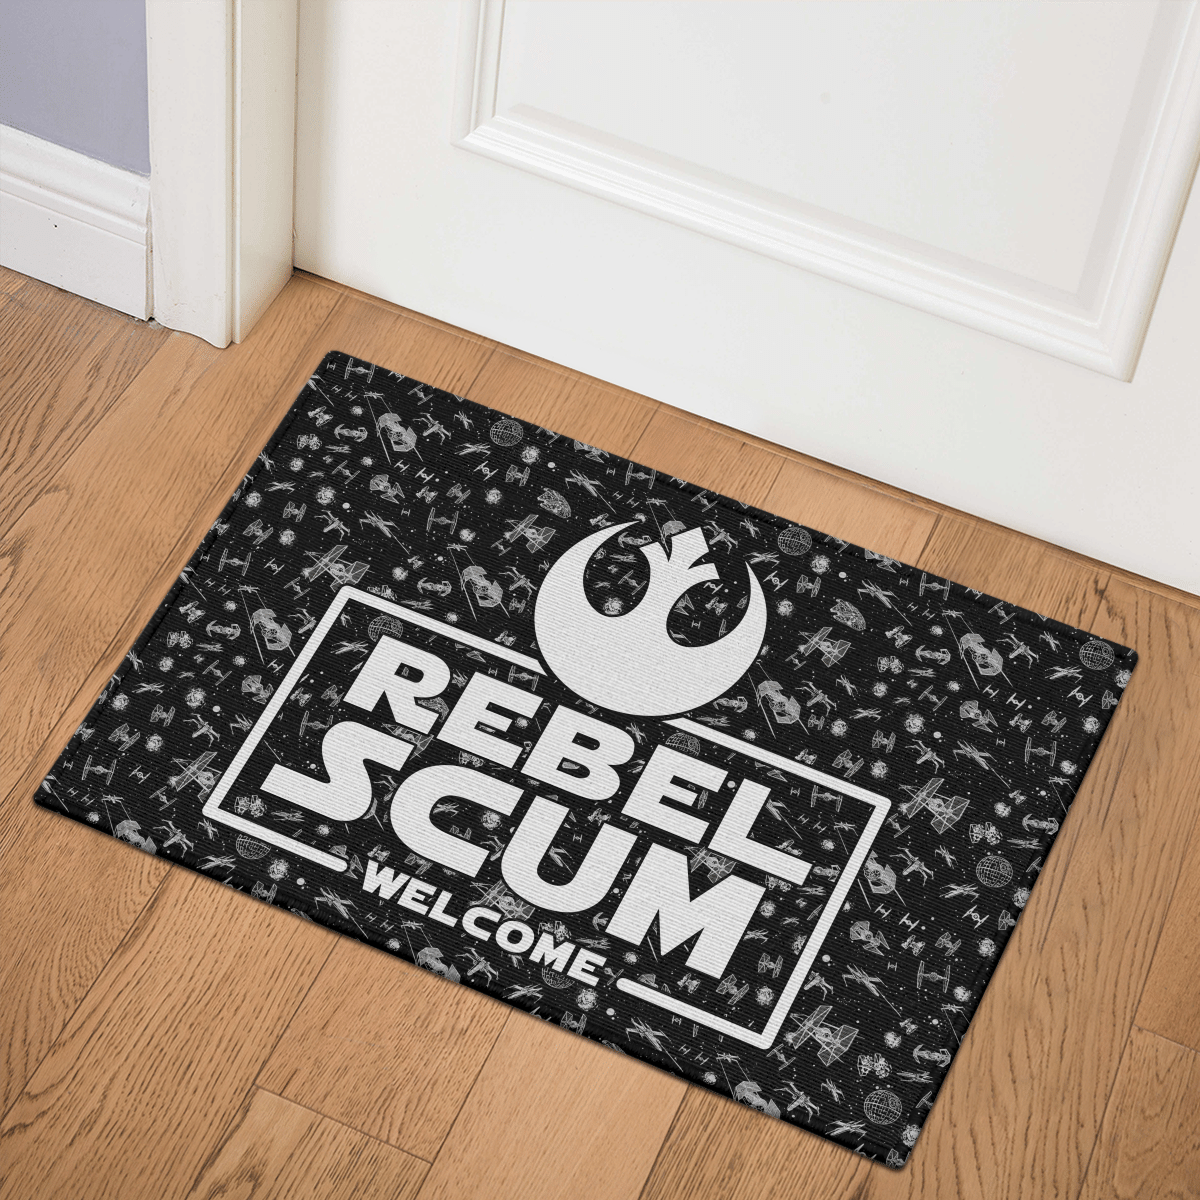 Rebel Scrum welcome doormat